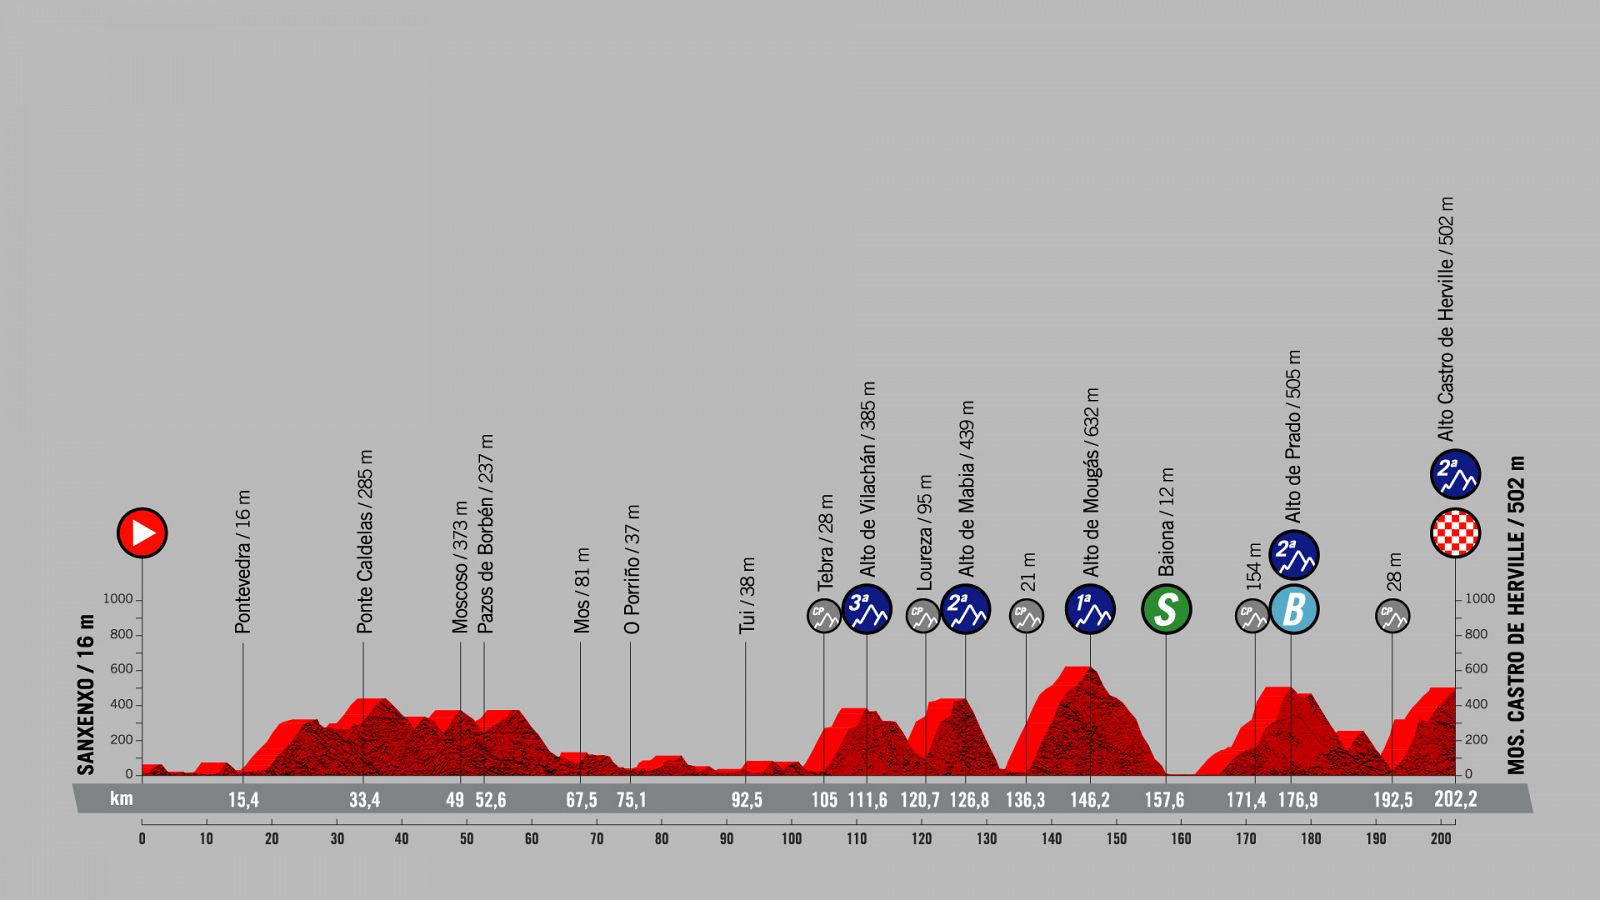 La Vuelta 2021 | Perfil etapa 20, la emboscada final